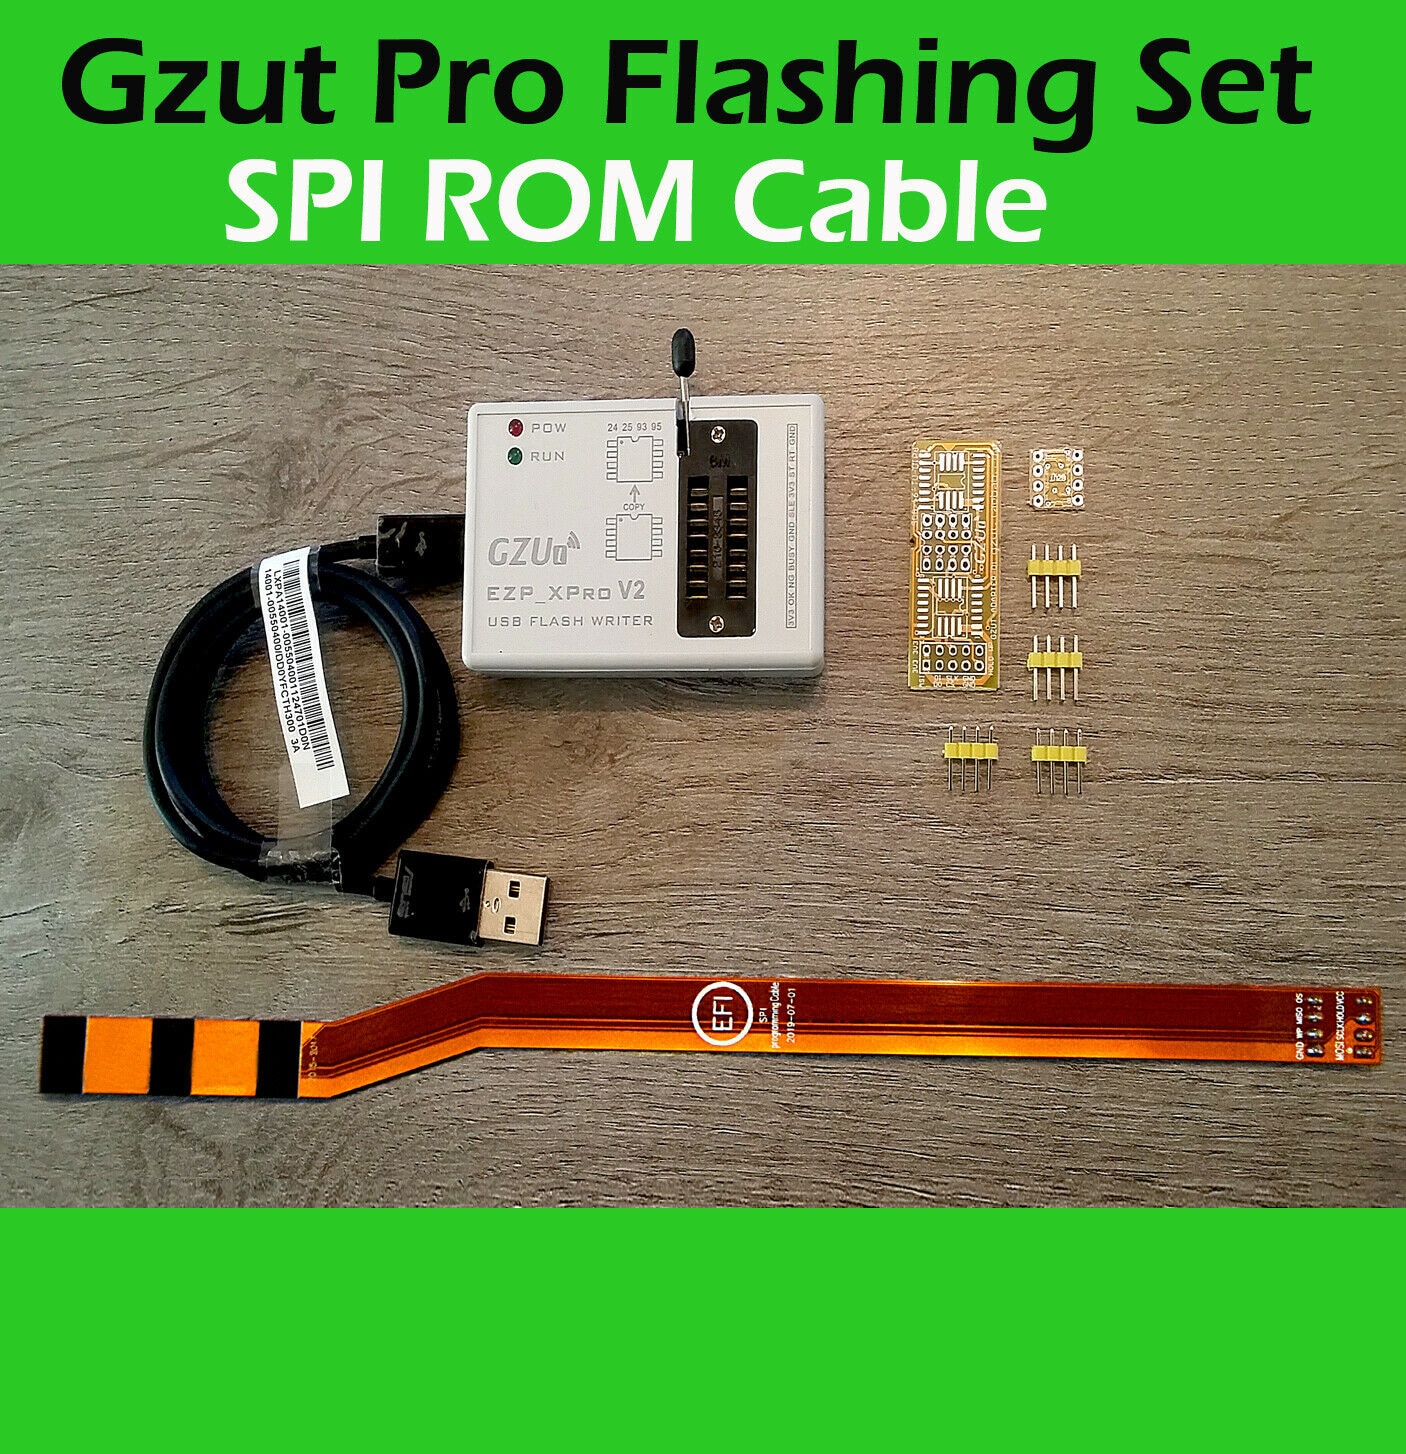 SPI ROM SAM EFI ROM Debug Connector Flashing Service tool J6100 Icloud GZUT v2 PRO Programmer+SPI J6100+J5100+J6100 cable Mac